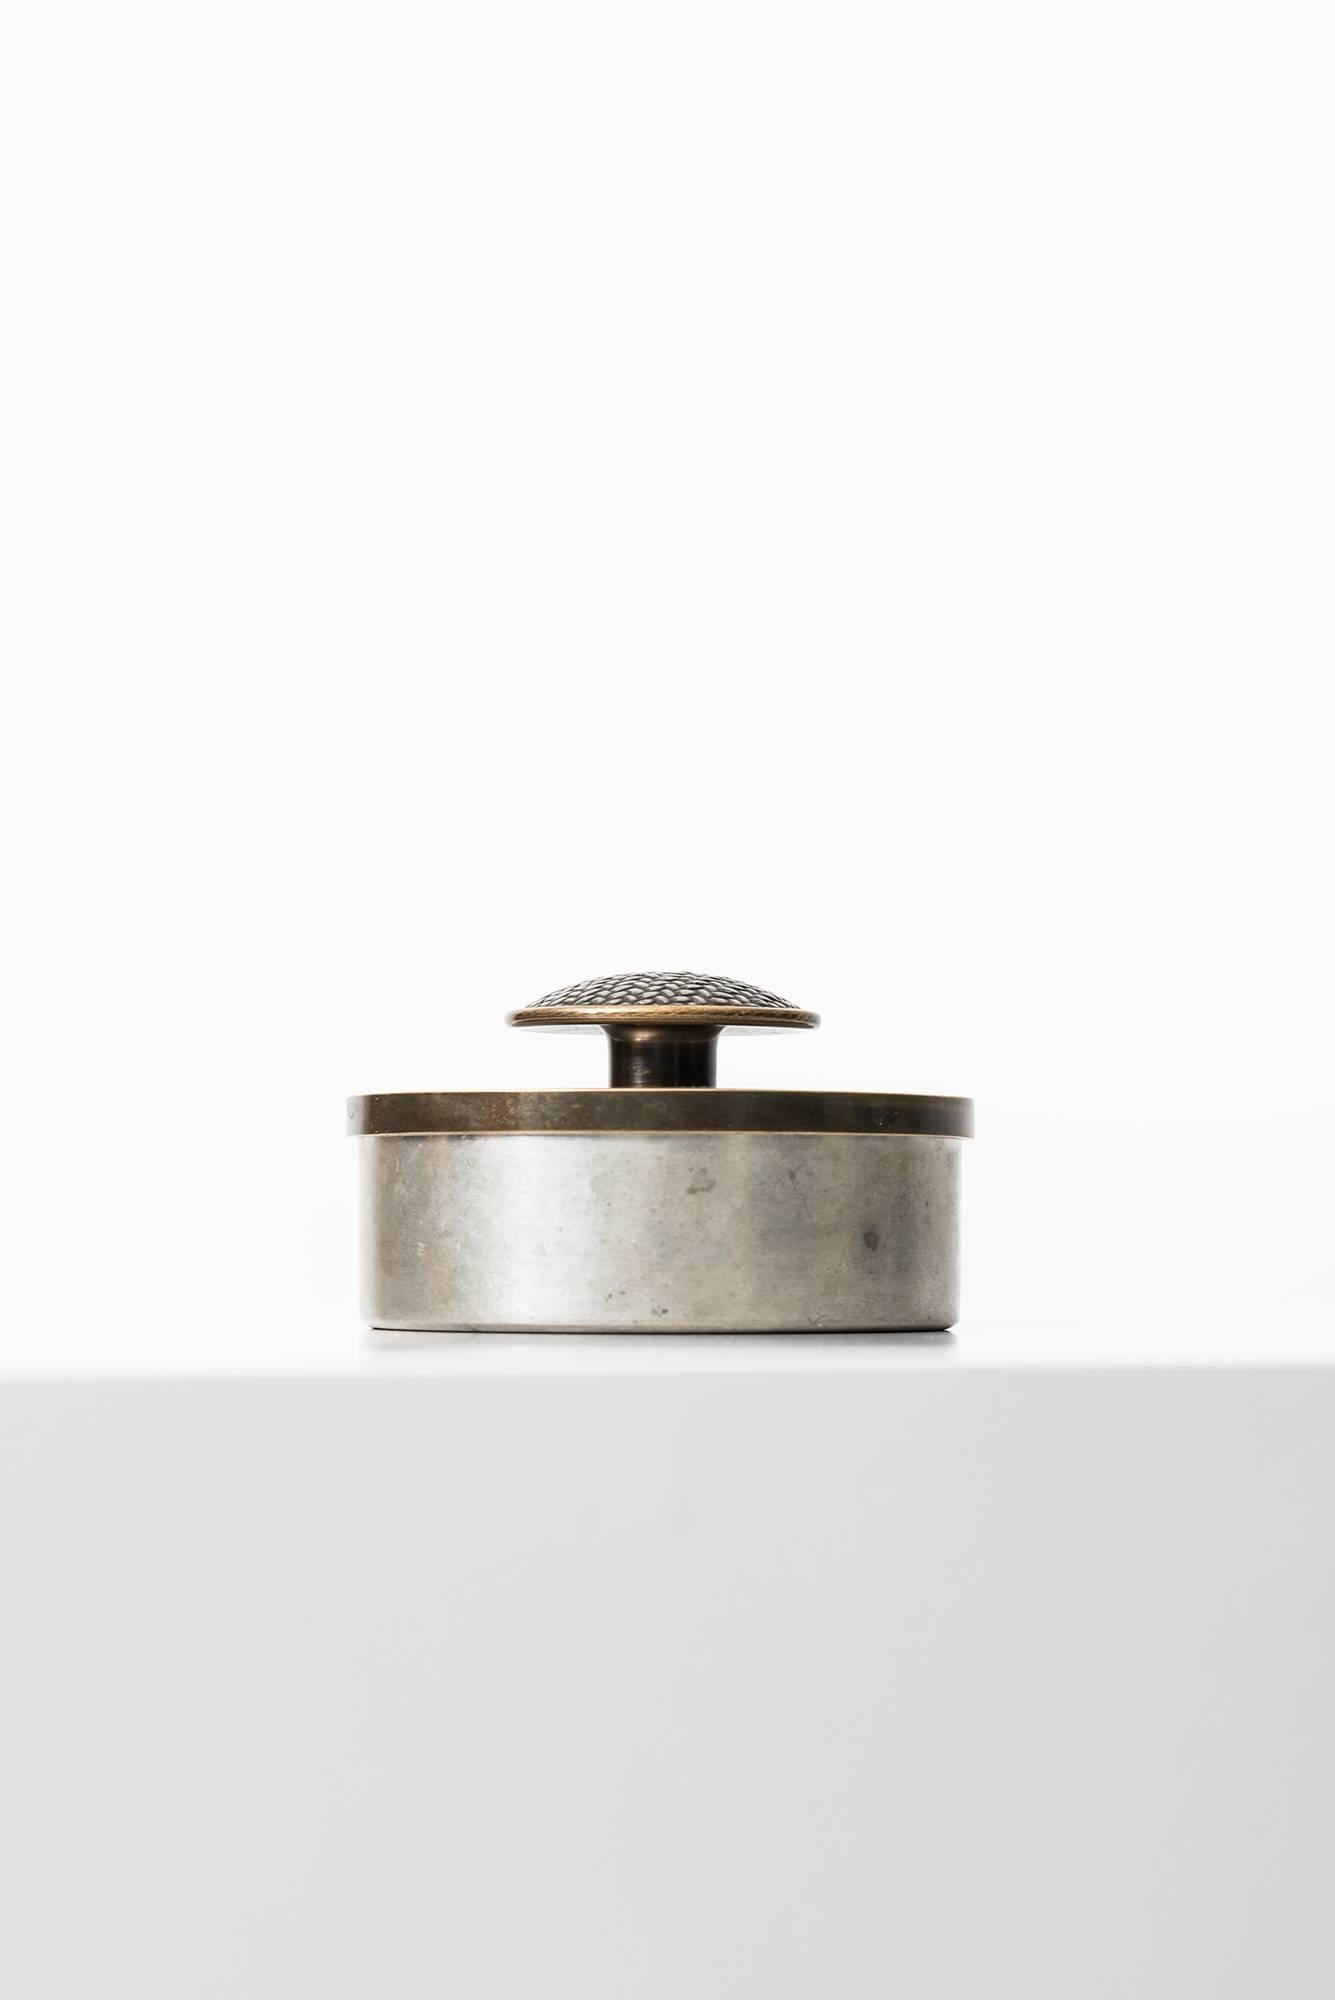 Rare pewter jar designed by Estrid Ericsson. Produced by Svenskt Tenn in Sweden.